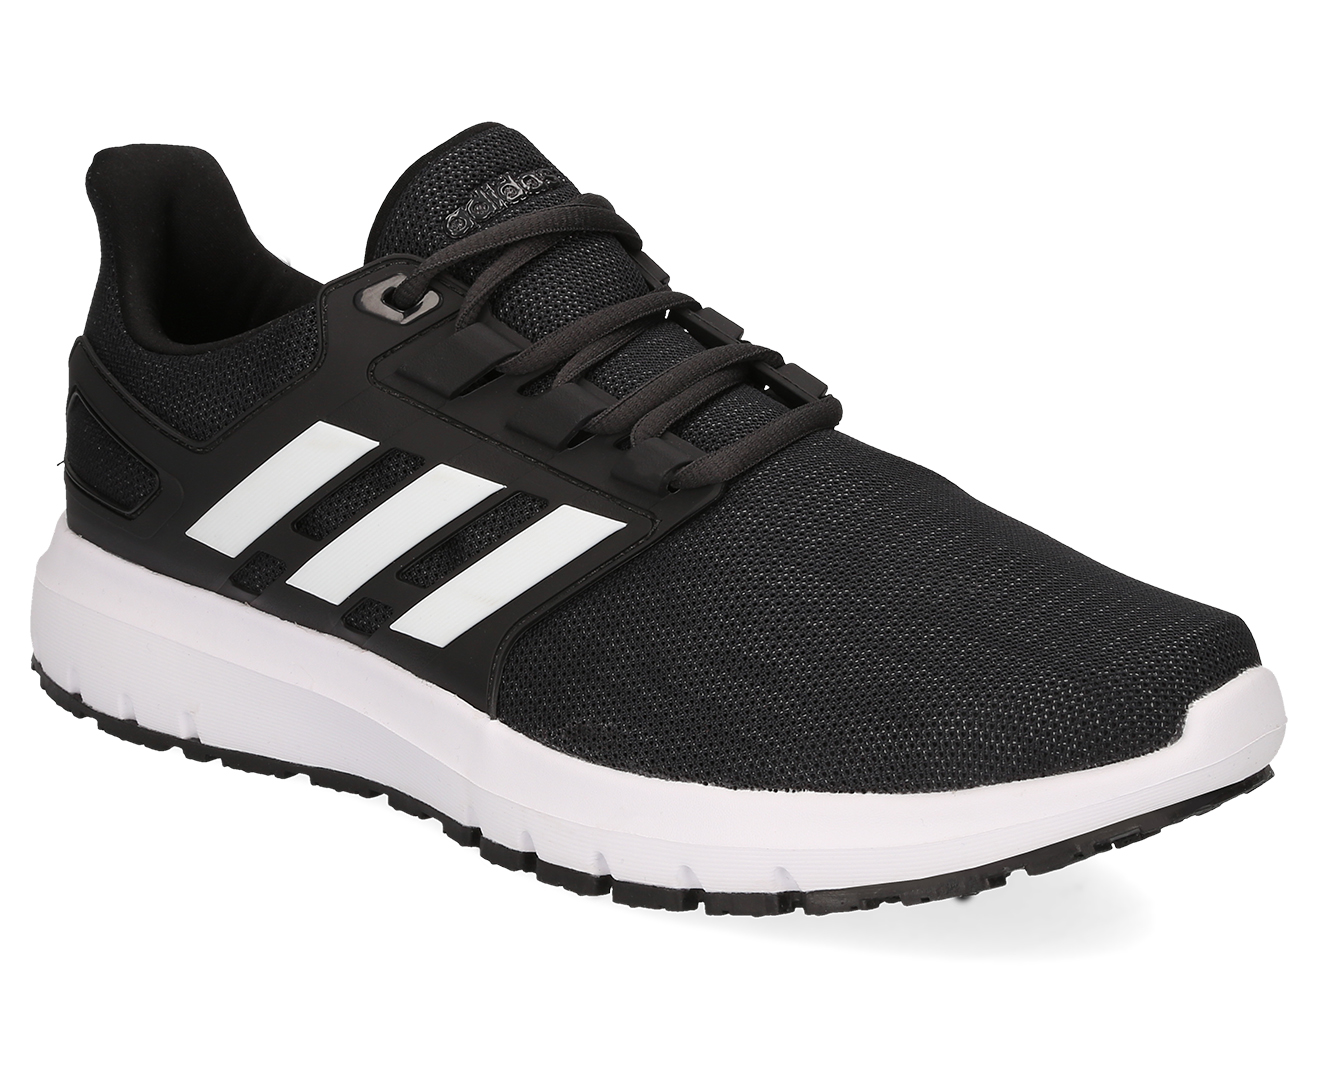 Adidas Men's Energy Cloud 2 Shoe - Core Black/White/Carbon | Catch.com.au